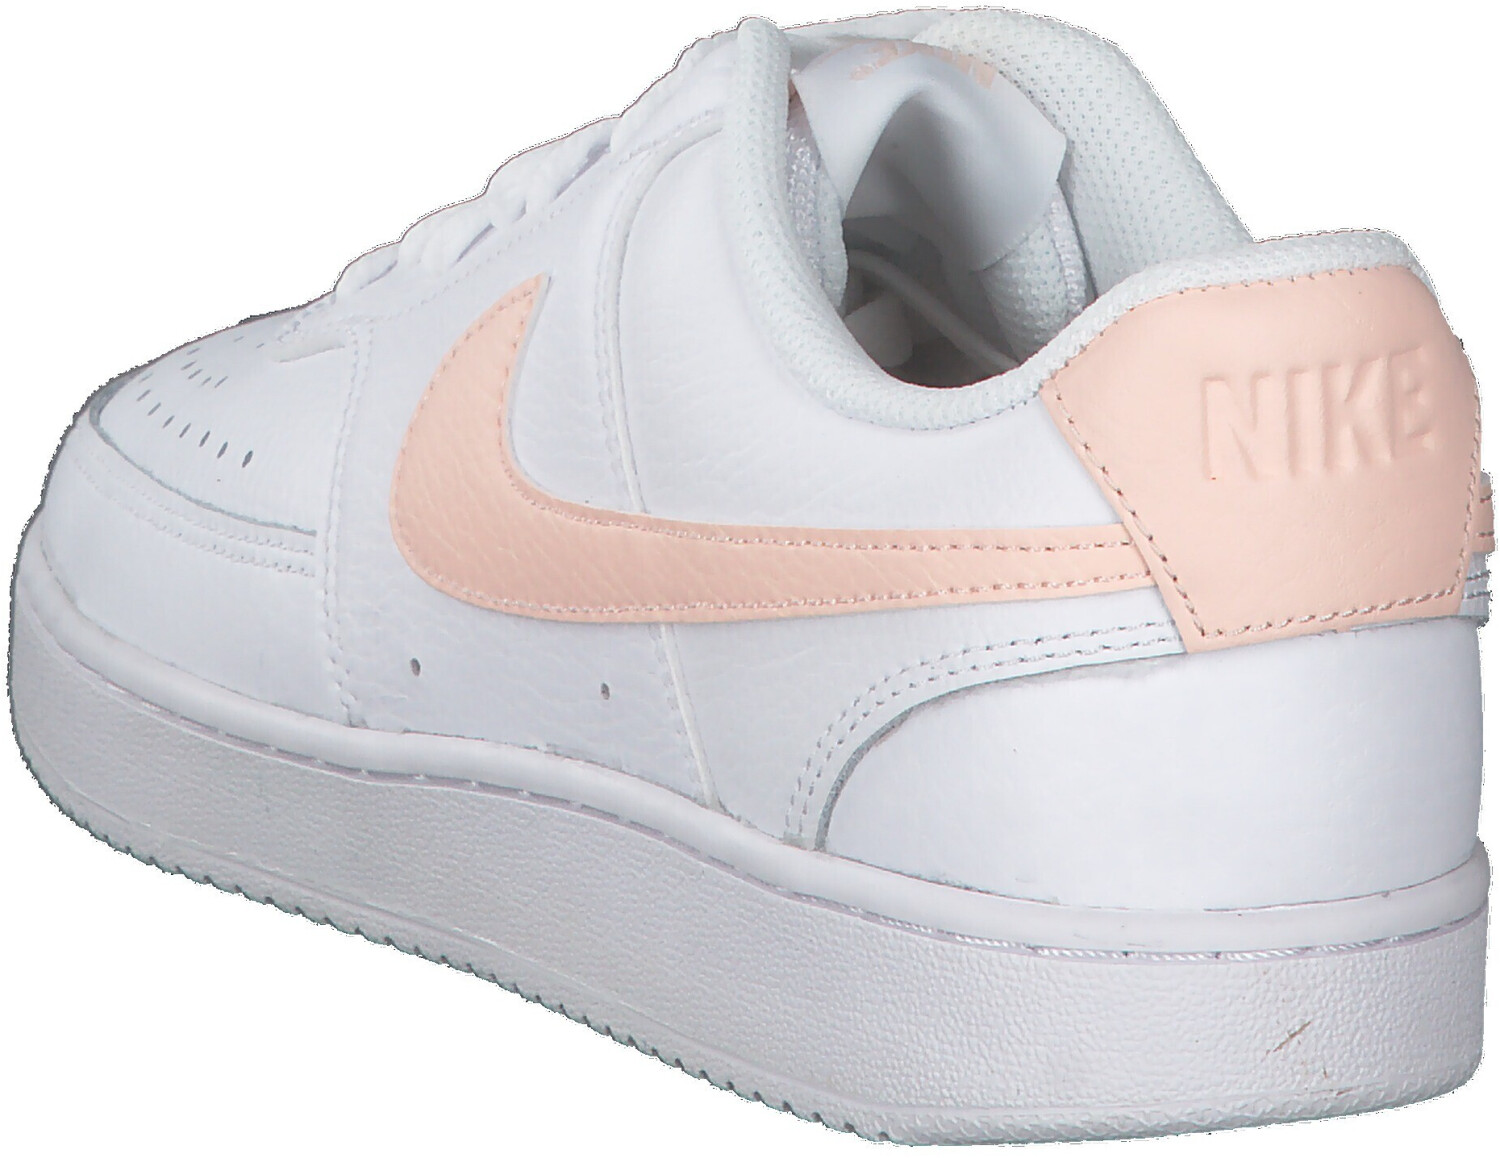 Nike Court Vision Low white/pink a € 32 99 (oggi) Migliori prezzi e